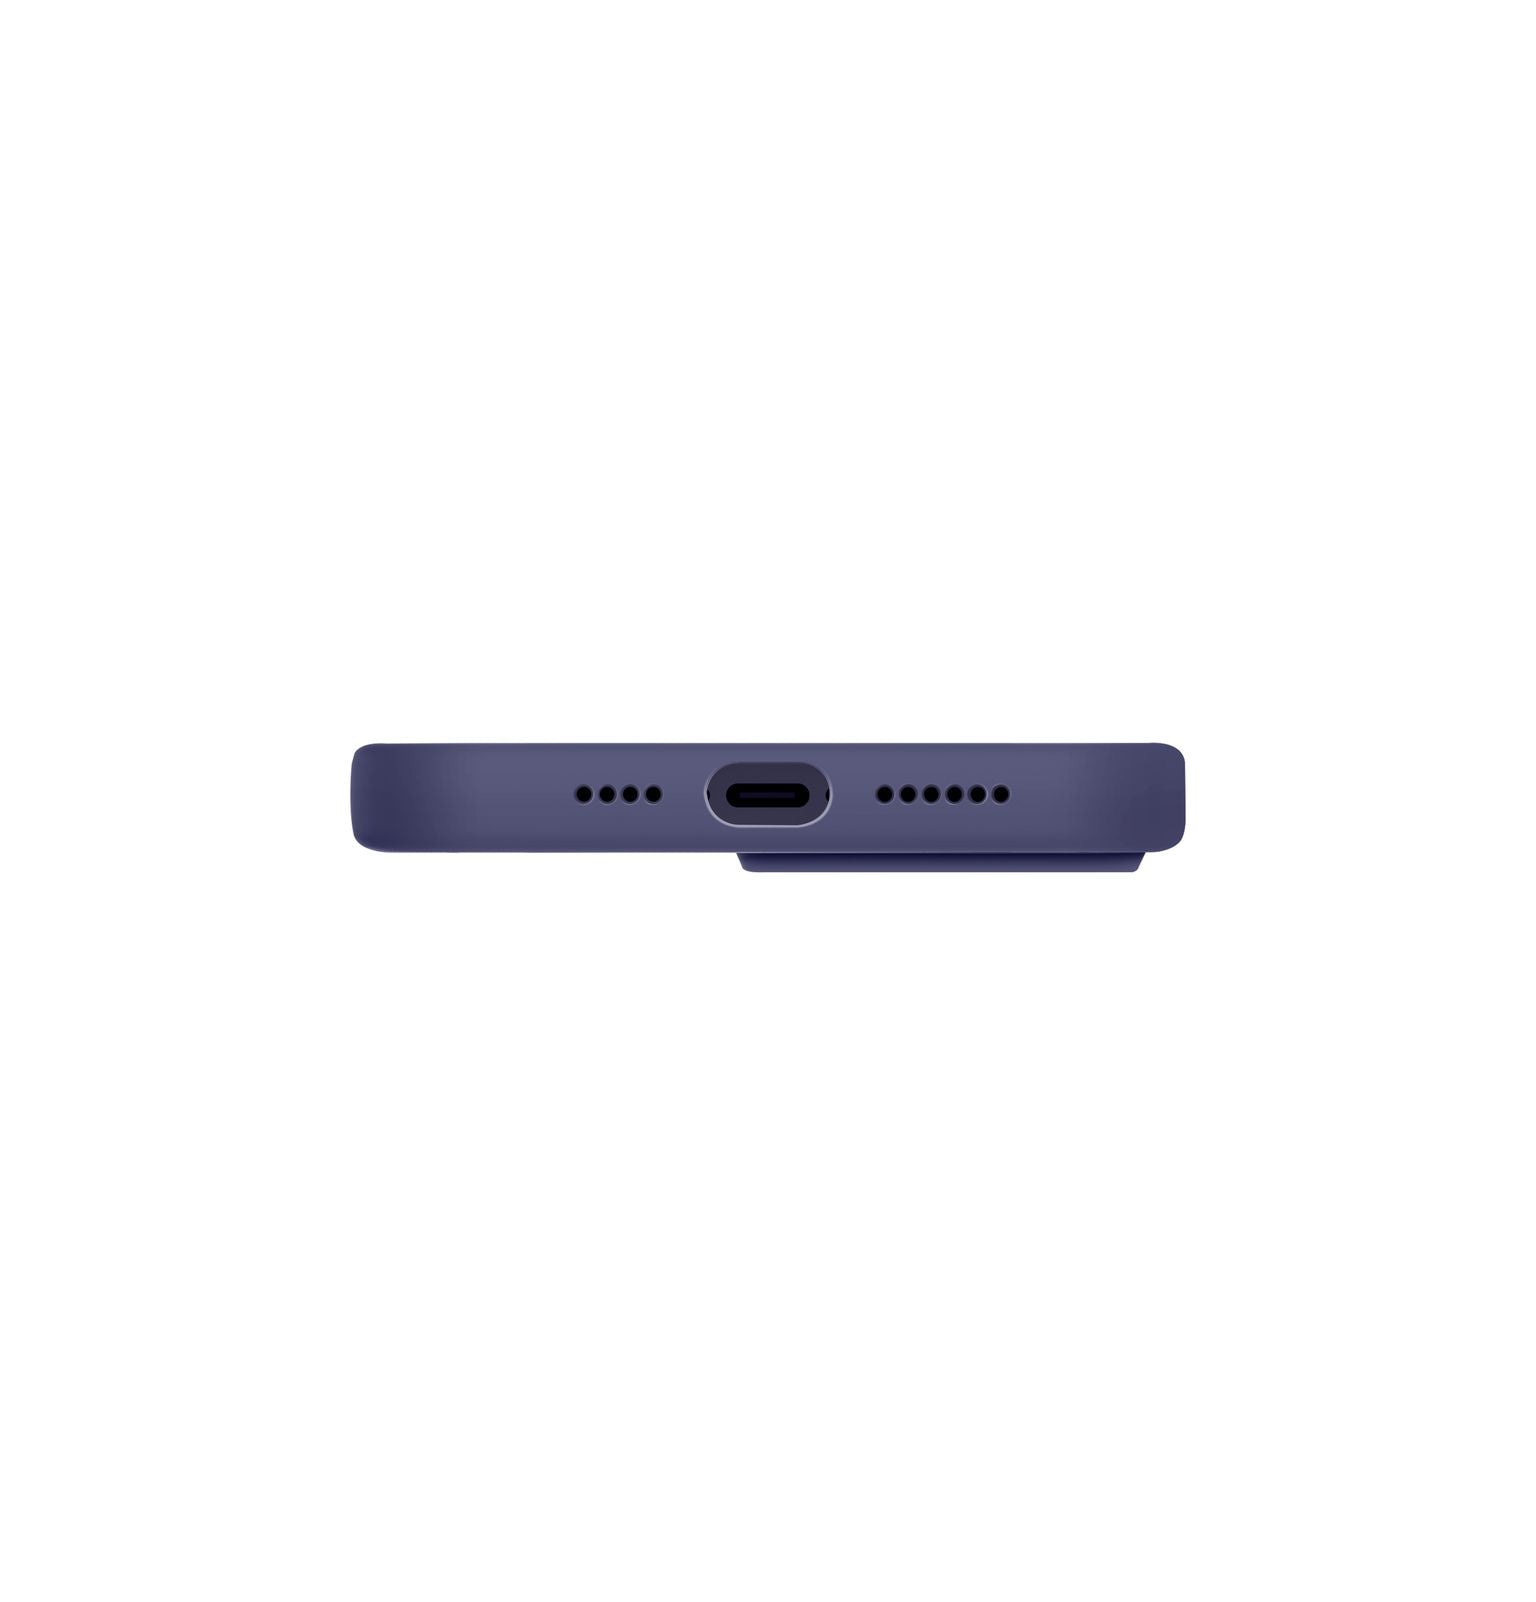 UNIQ Lino Hybrid Case for iPhone 14 6.1 Pro - Purple